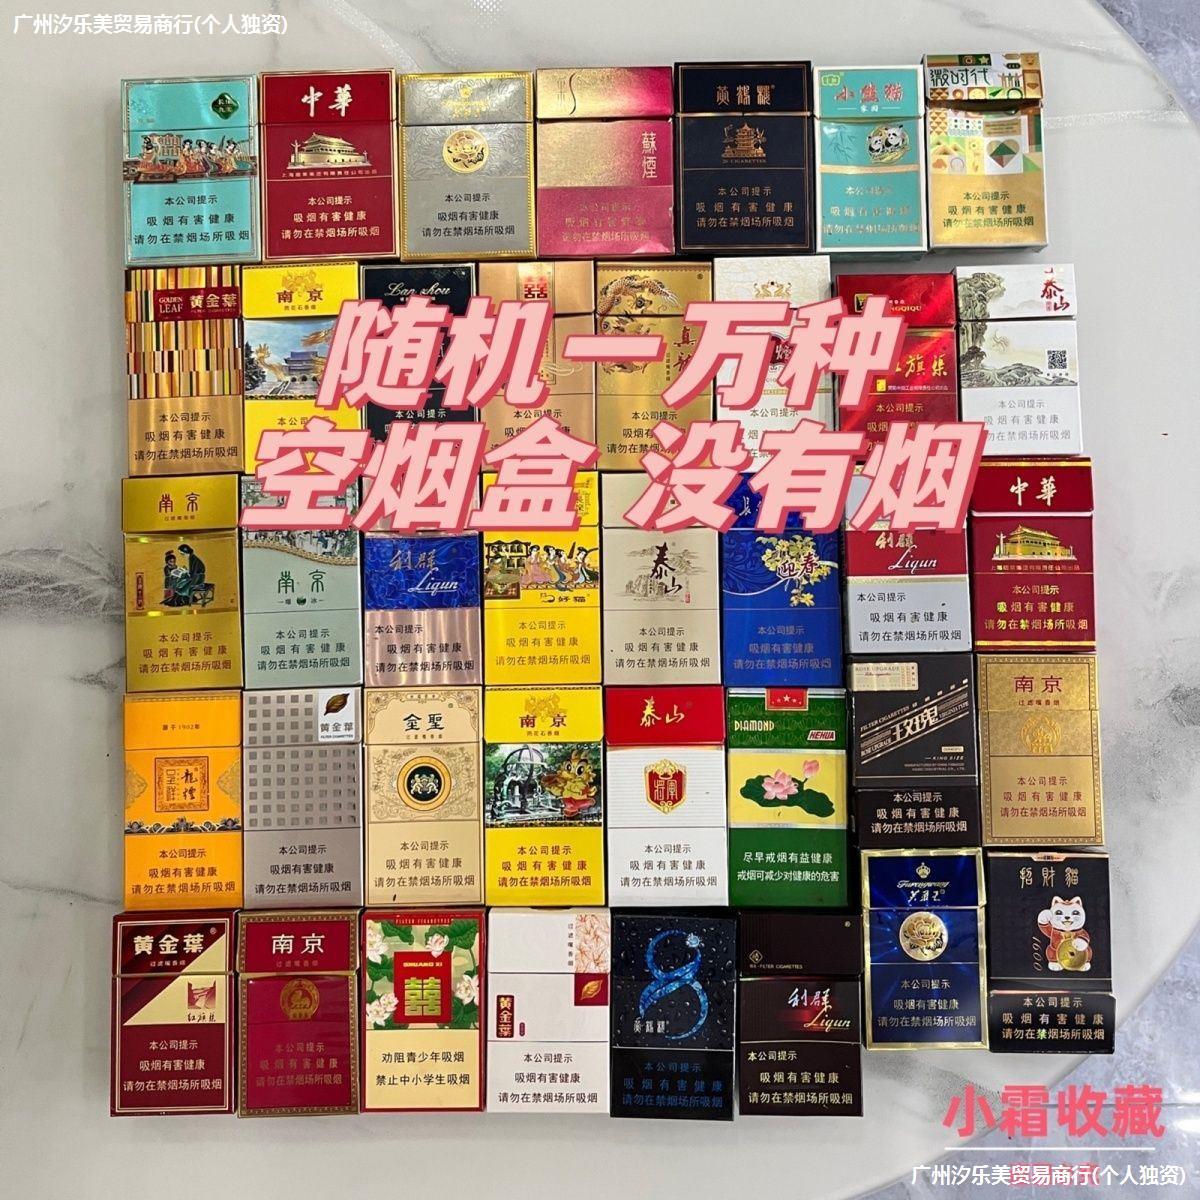 (首单直降)空盒子小盒烟牌烟标收藏呸呸卡轰轰卡精美盒装外国收纳